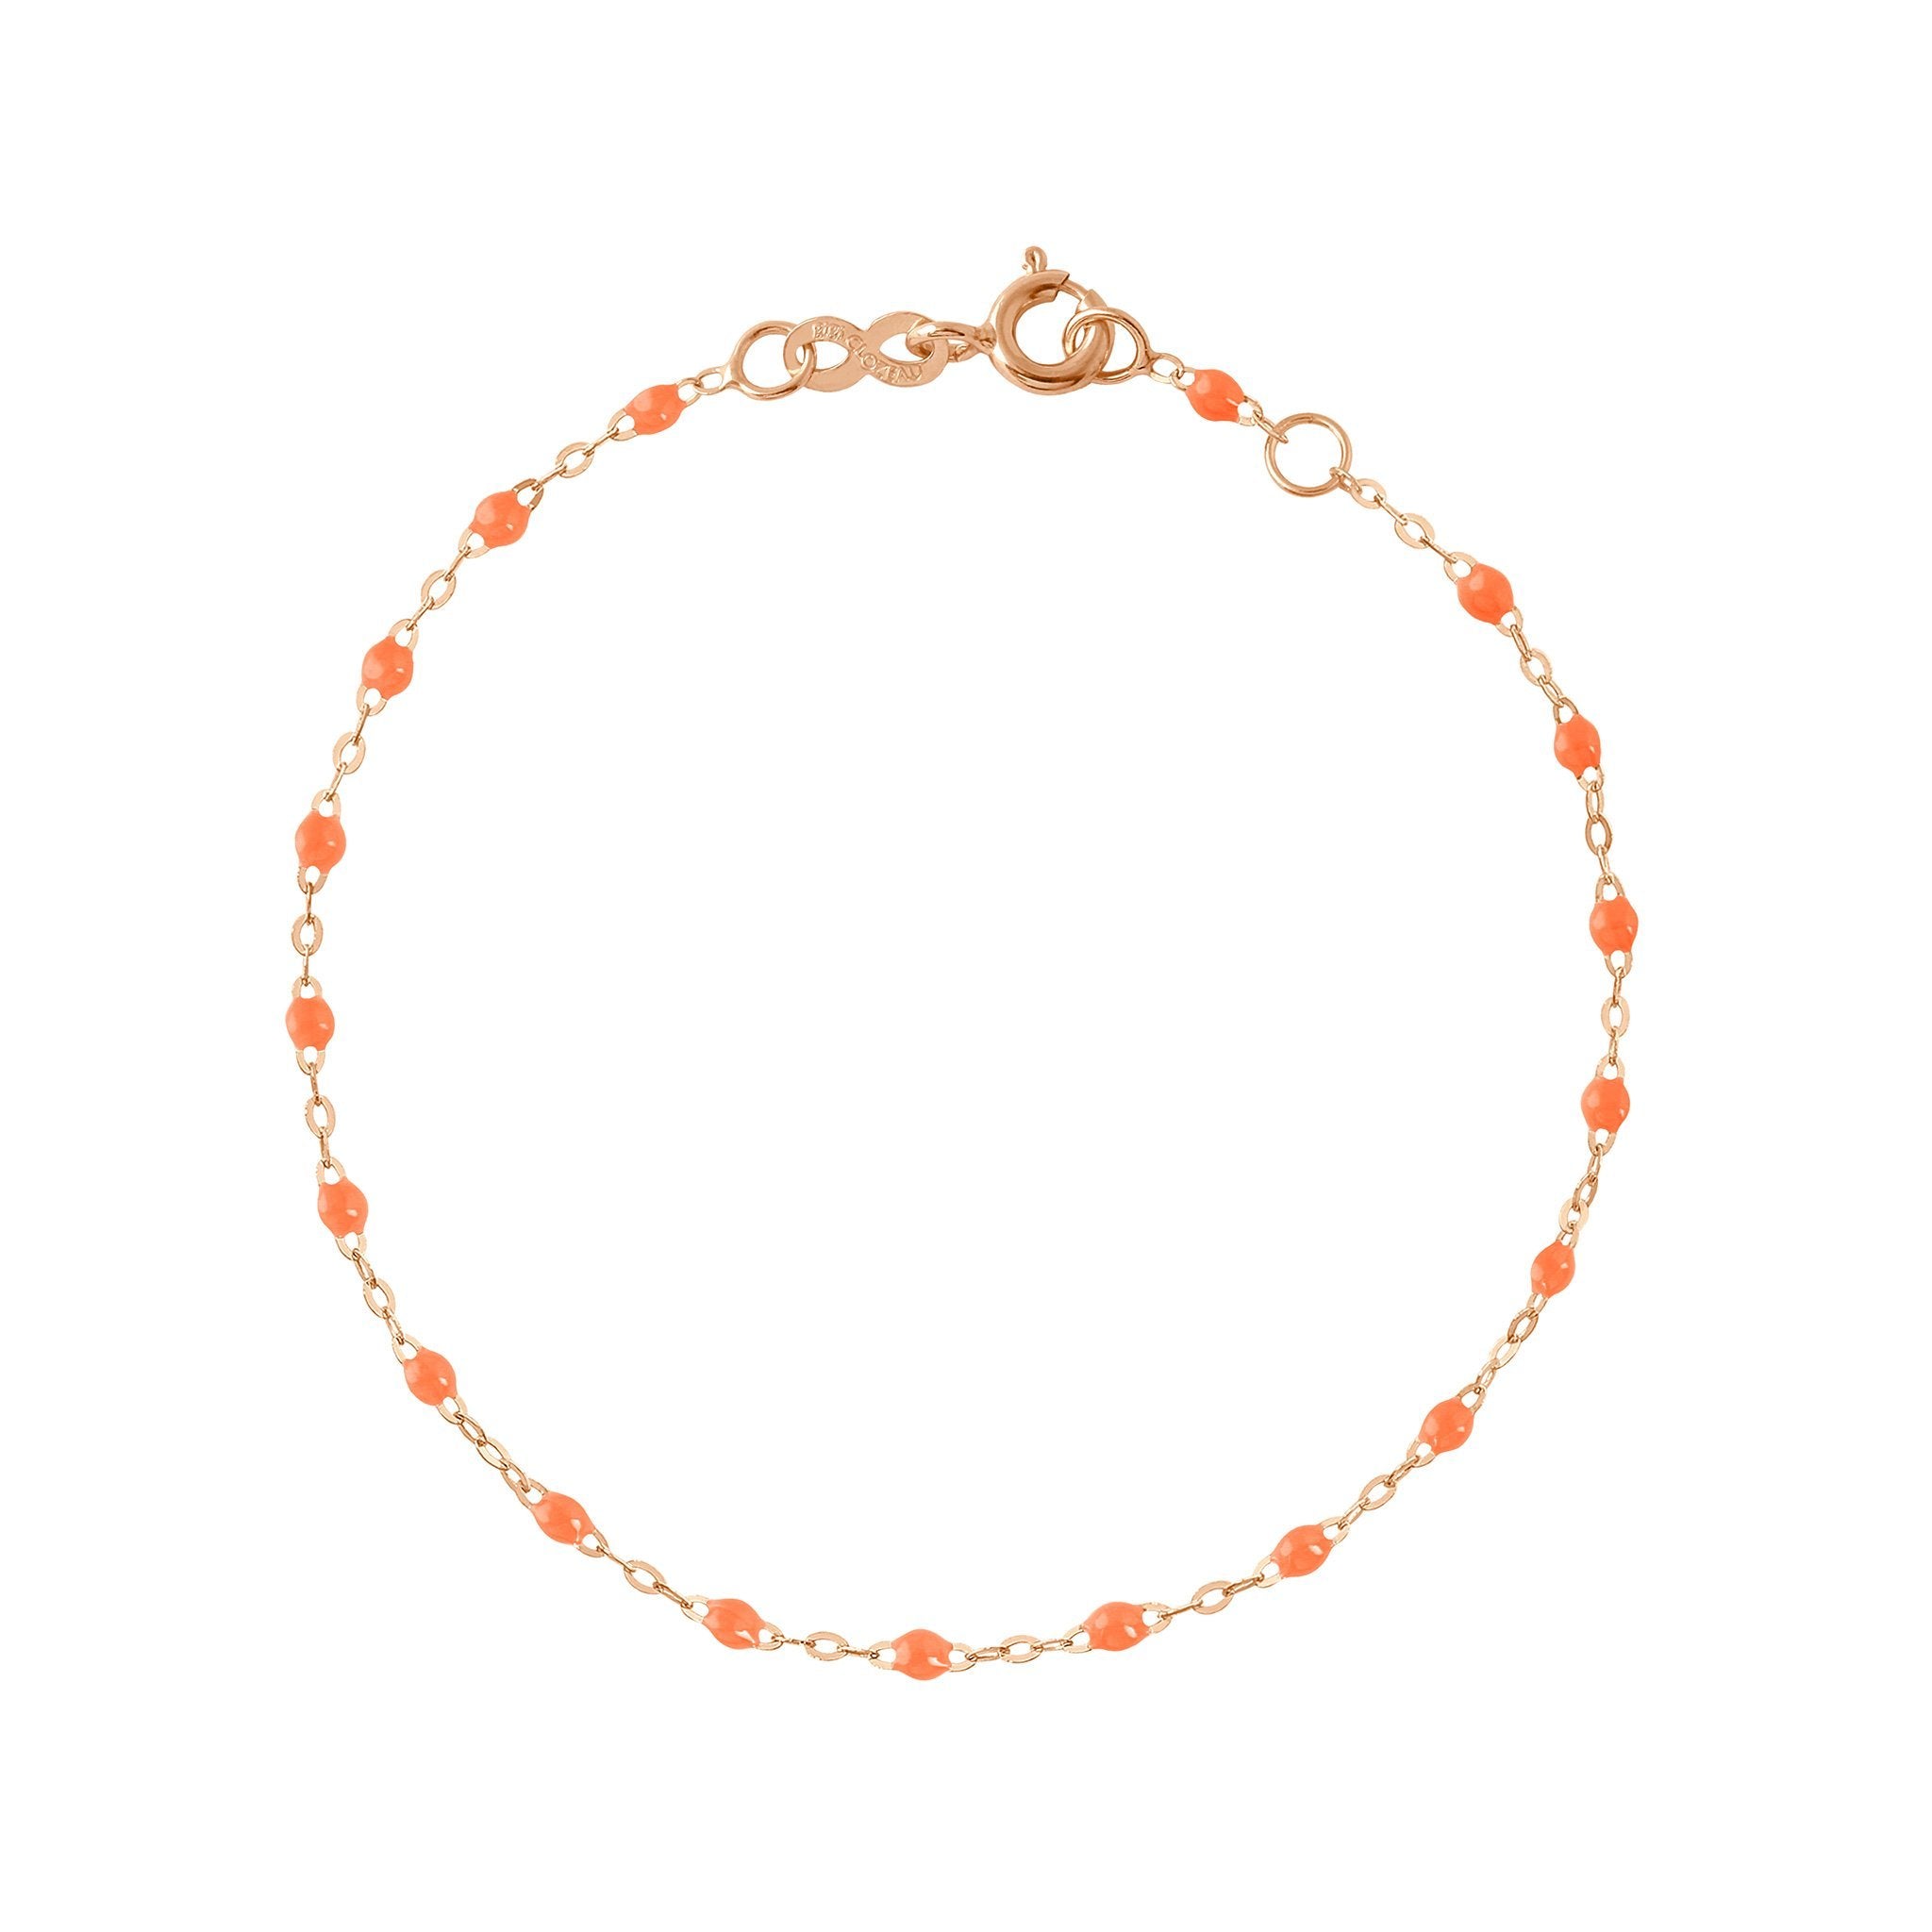 Bracelet orange fluo Classique Gigi, or rose, 15 cm classique gigi Référence :  b3gi001r1315xx -1